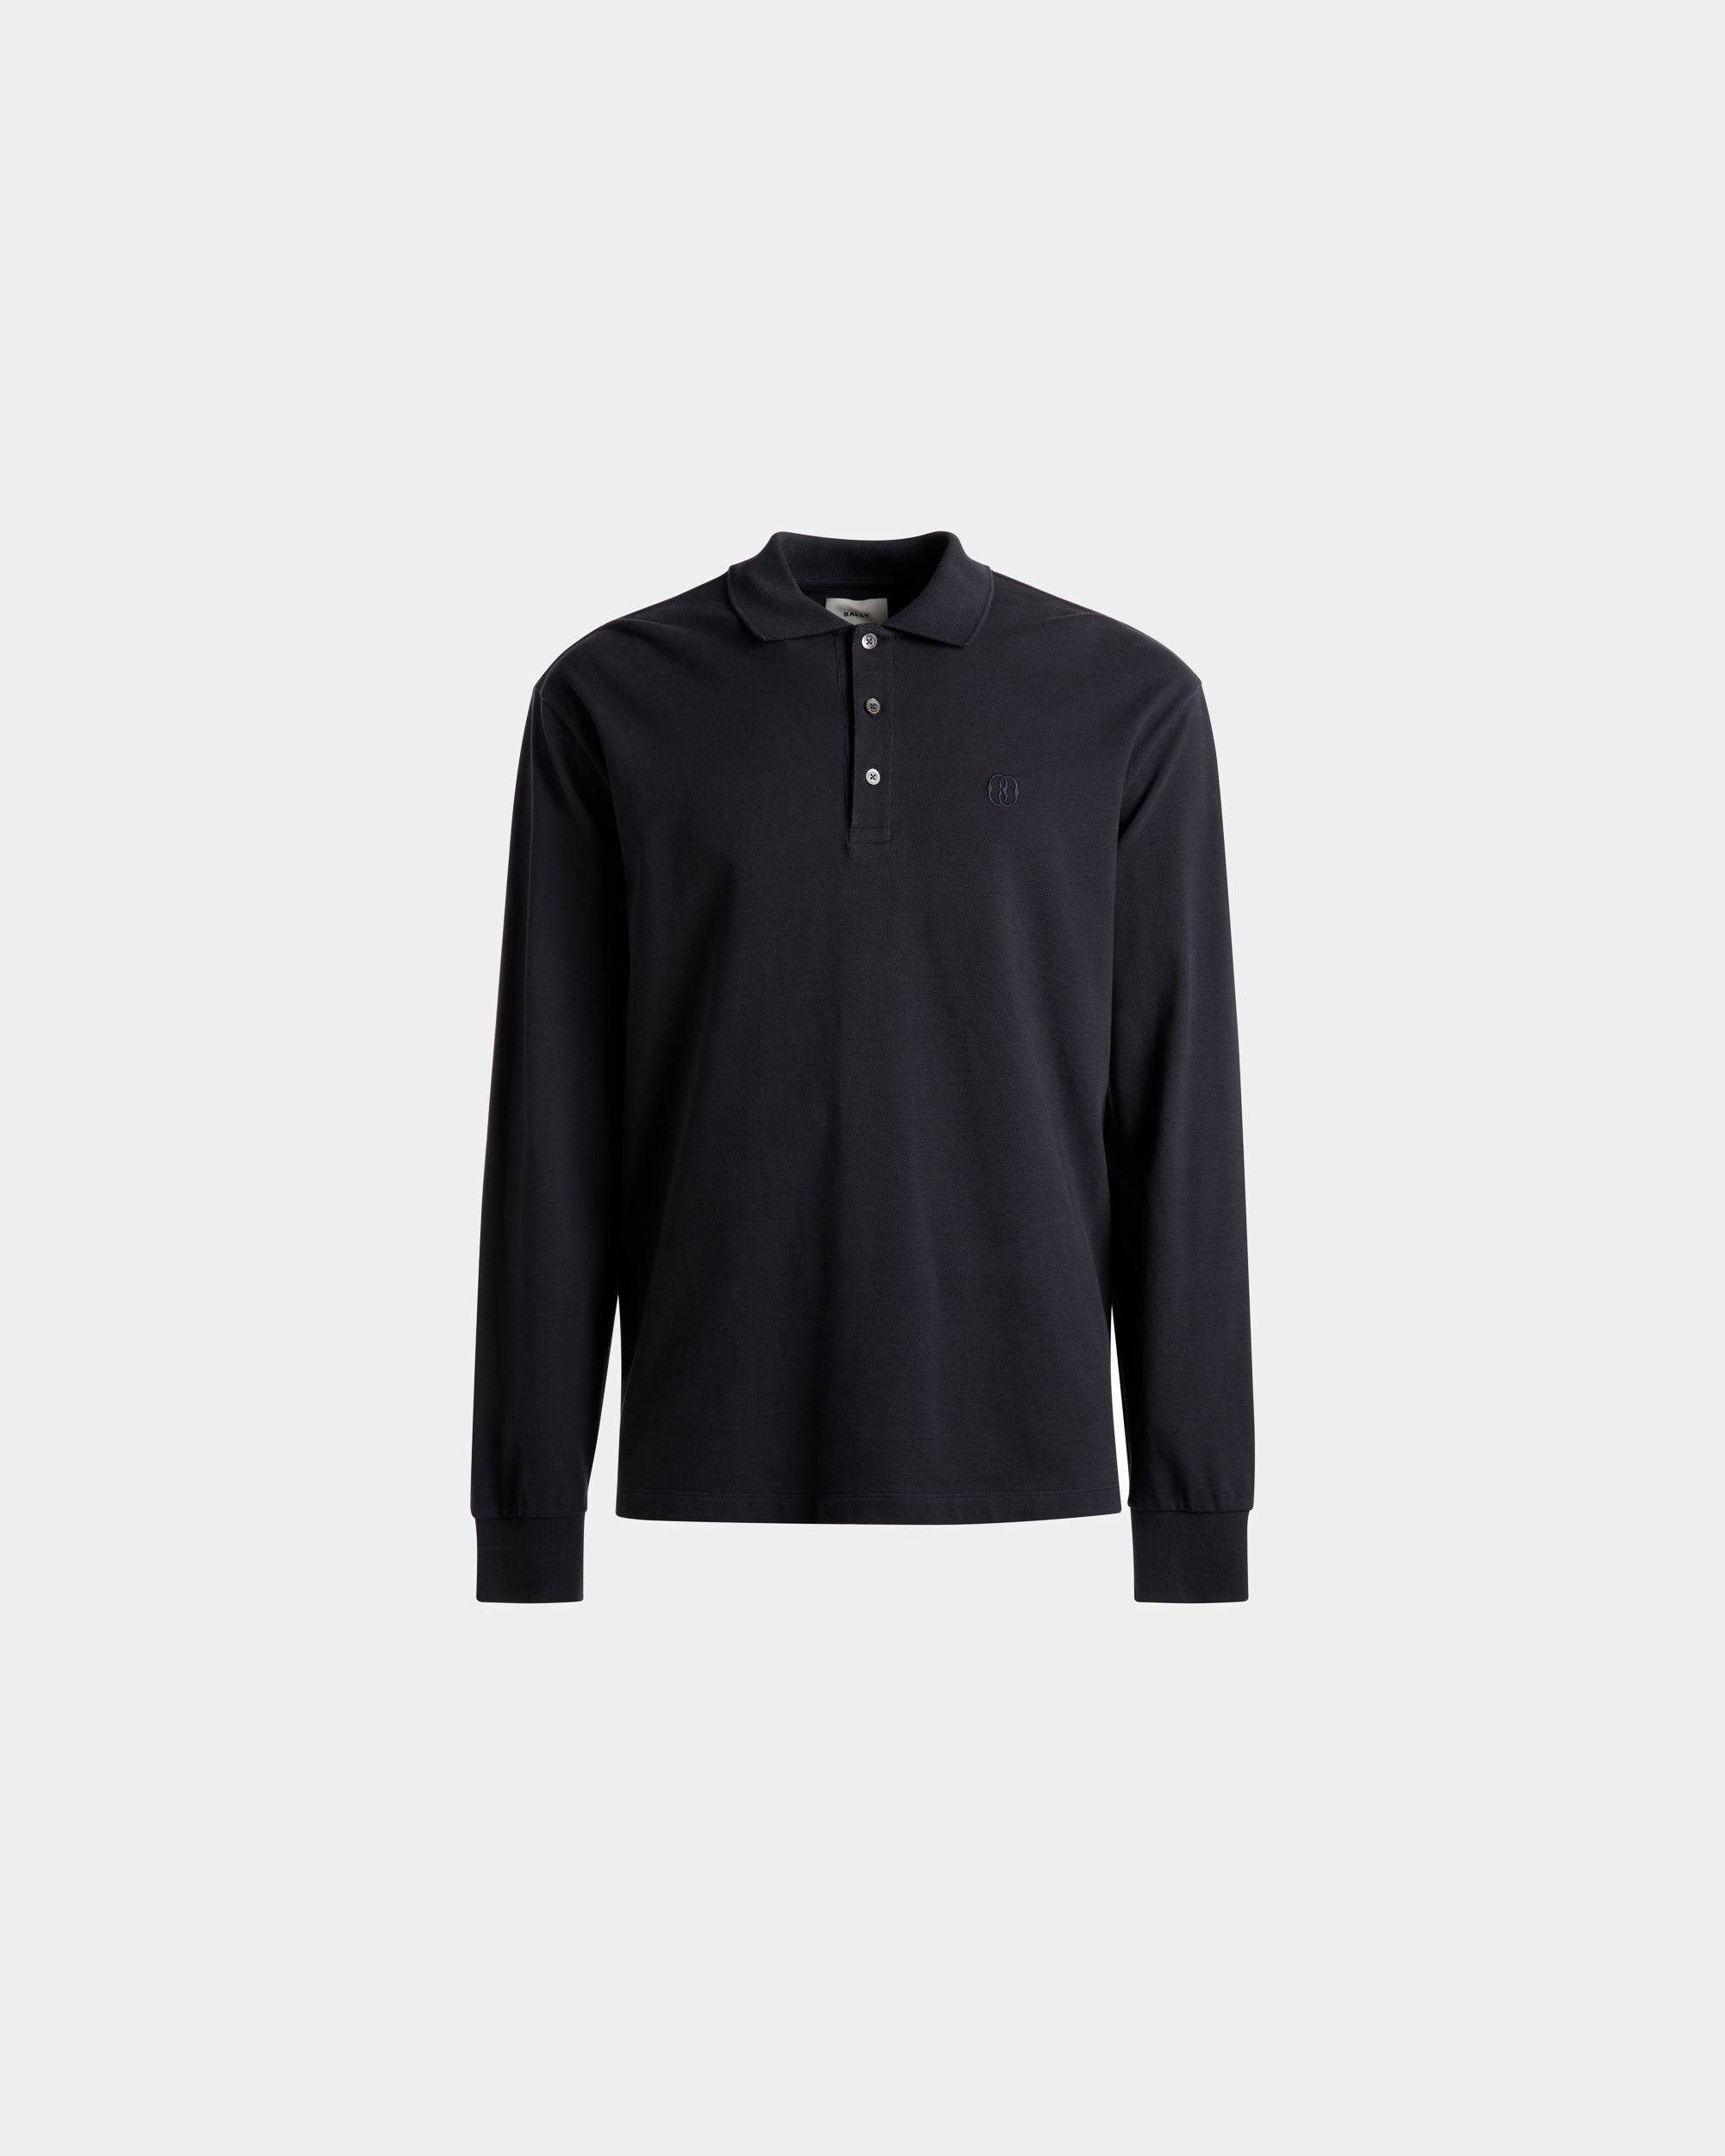 Langarm-Poloshirt | Polohemd für Herren | Baumwolle in Mitternachtsblau | Bally | Still Life Vorderseite